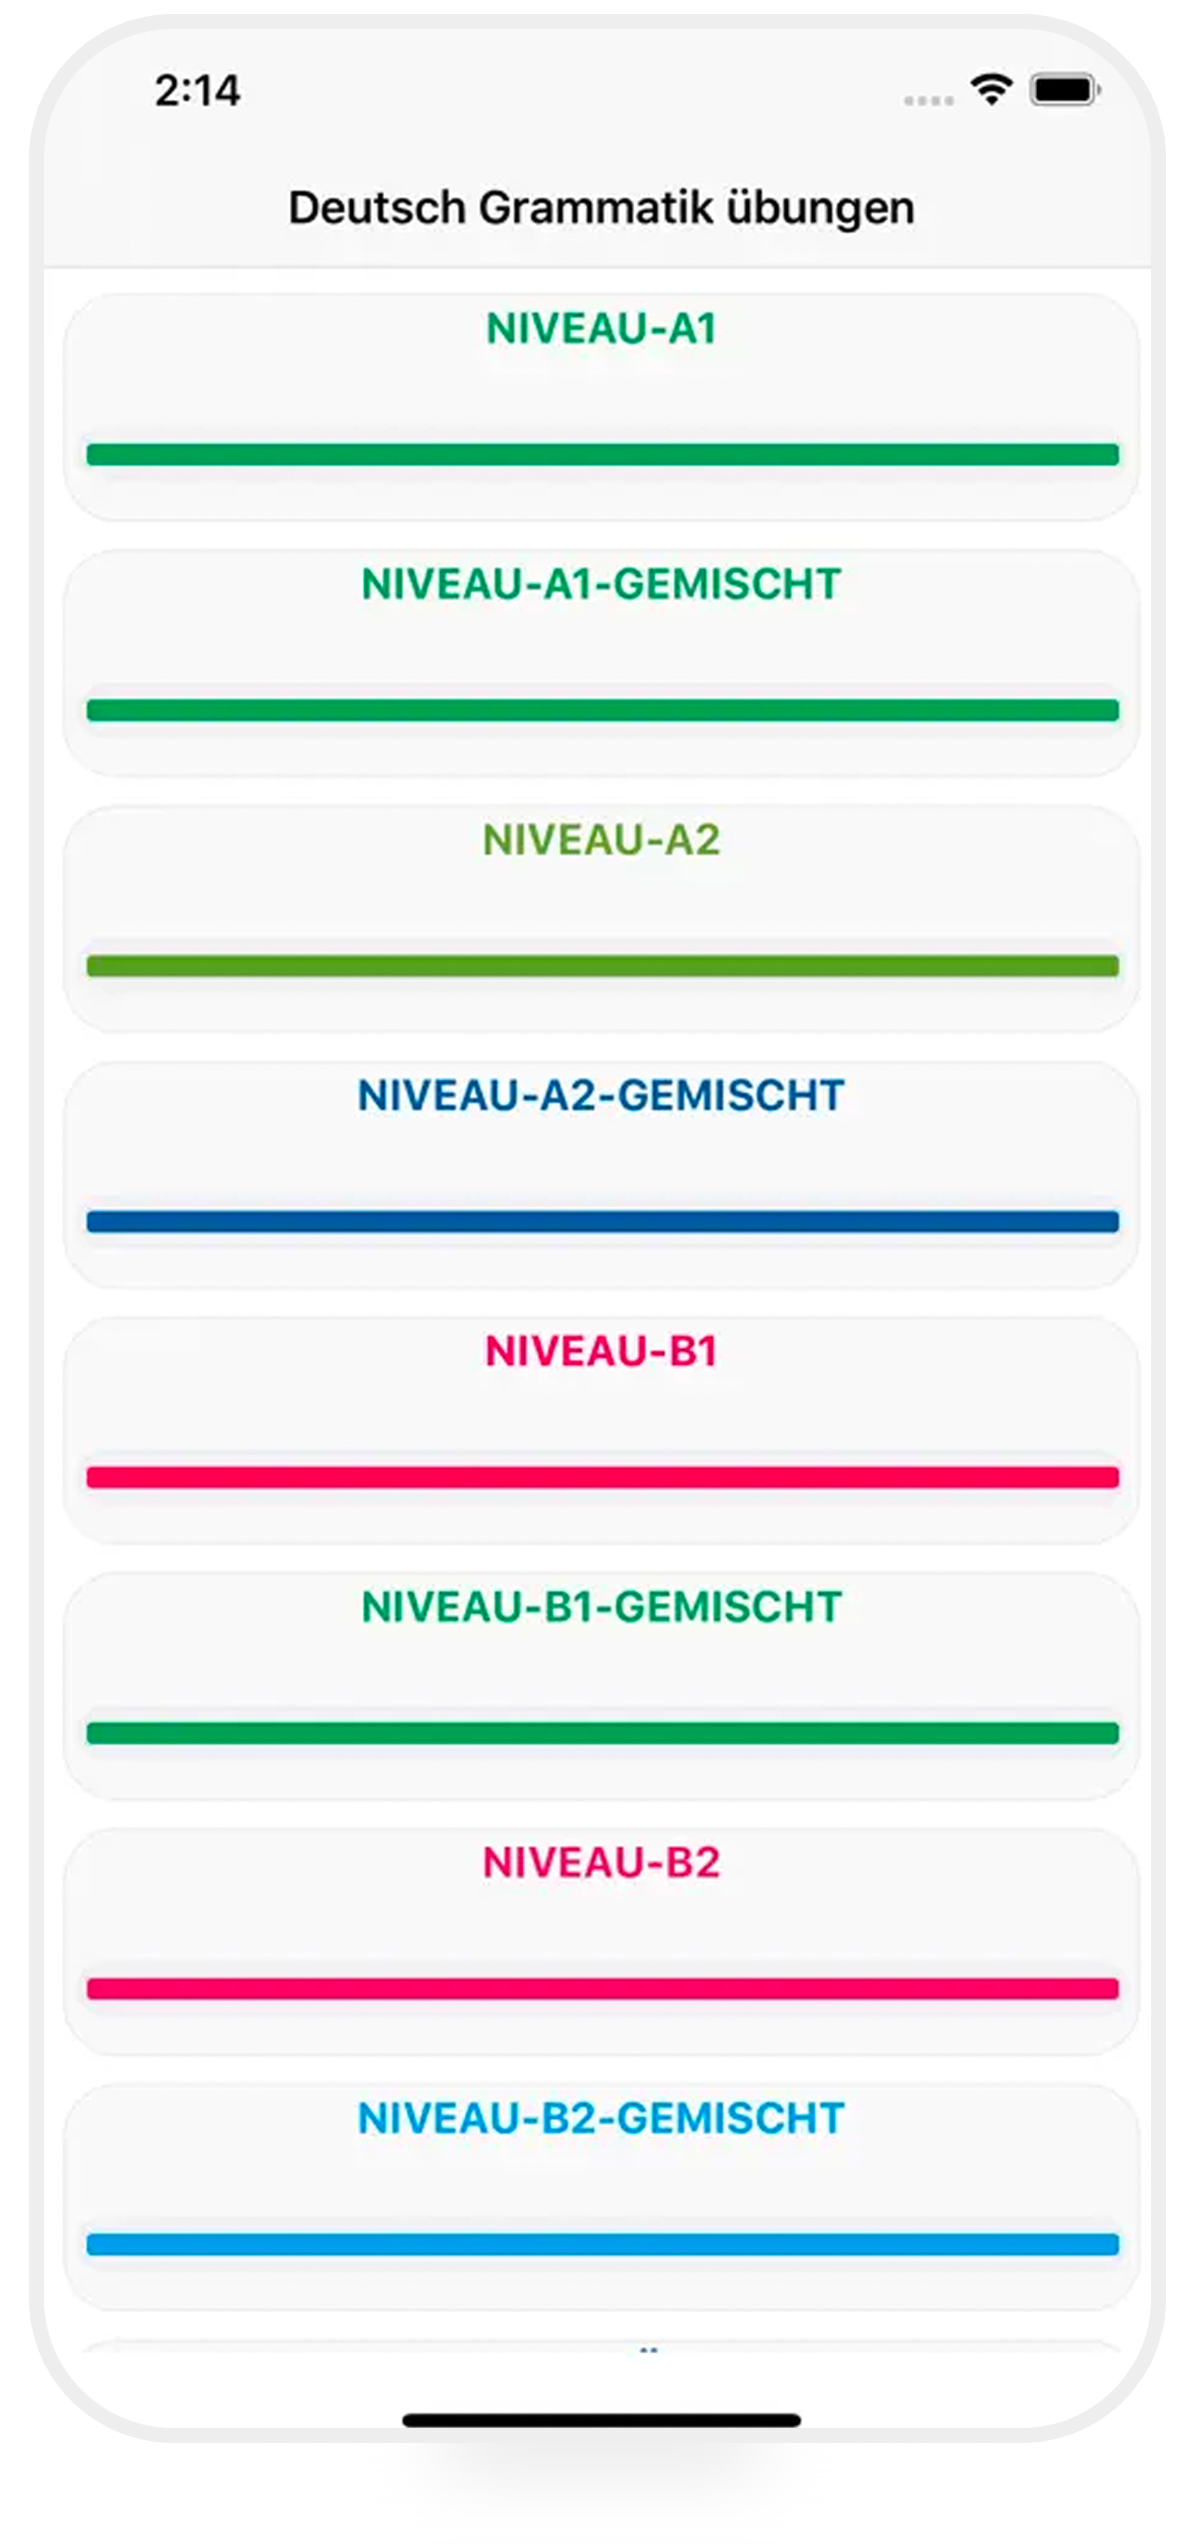 جرمن کامپلت گرامر (German Complete Grammar) بهترین اپ آموزش زبان آلمانی برای اندروید و iOS